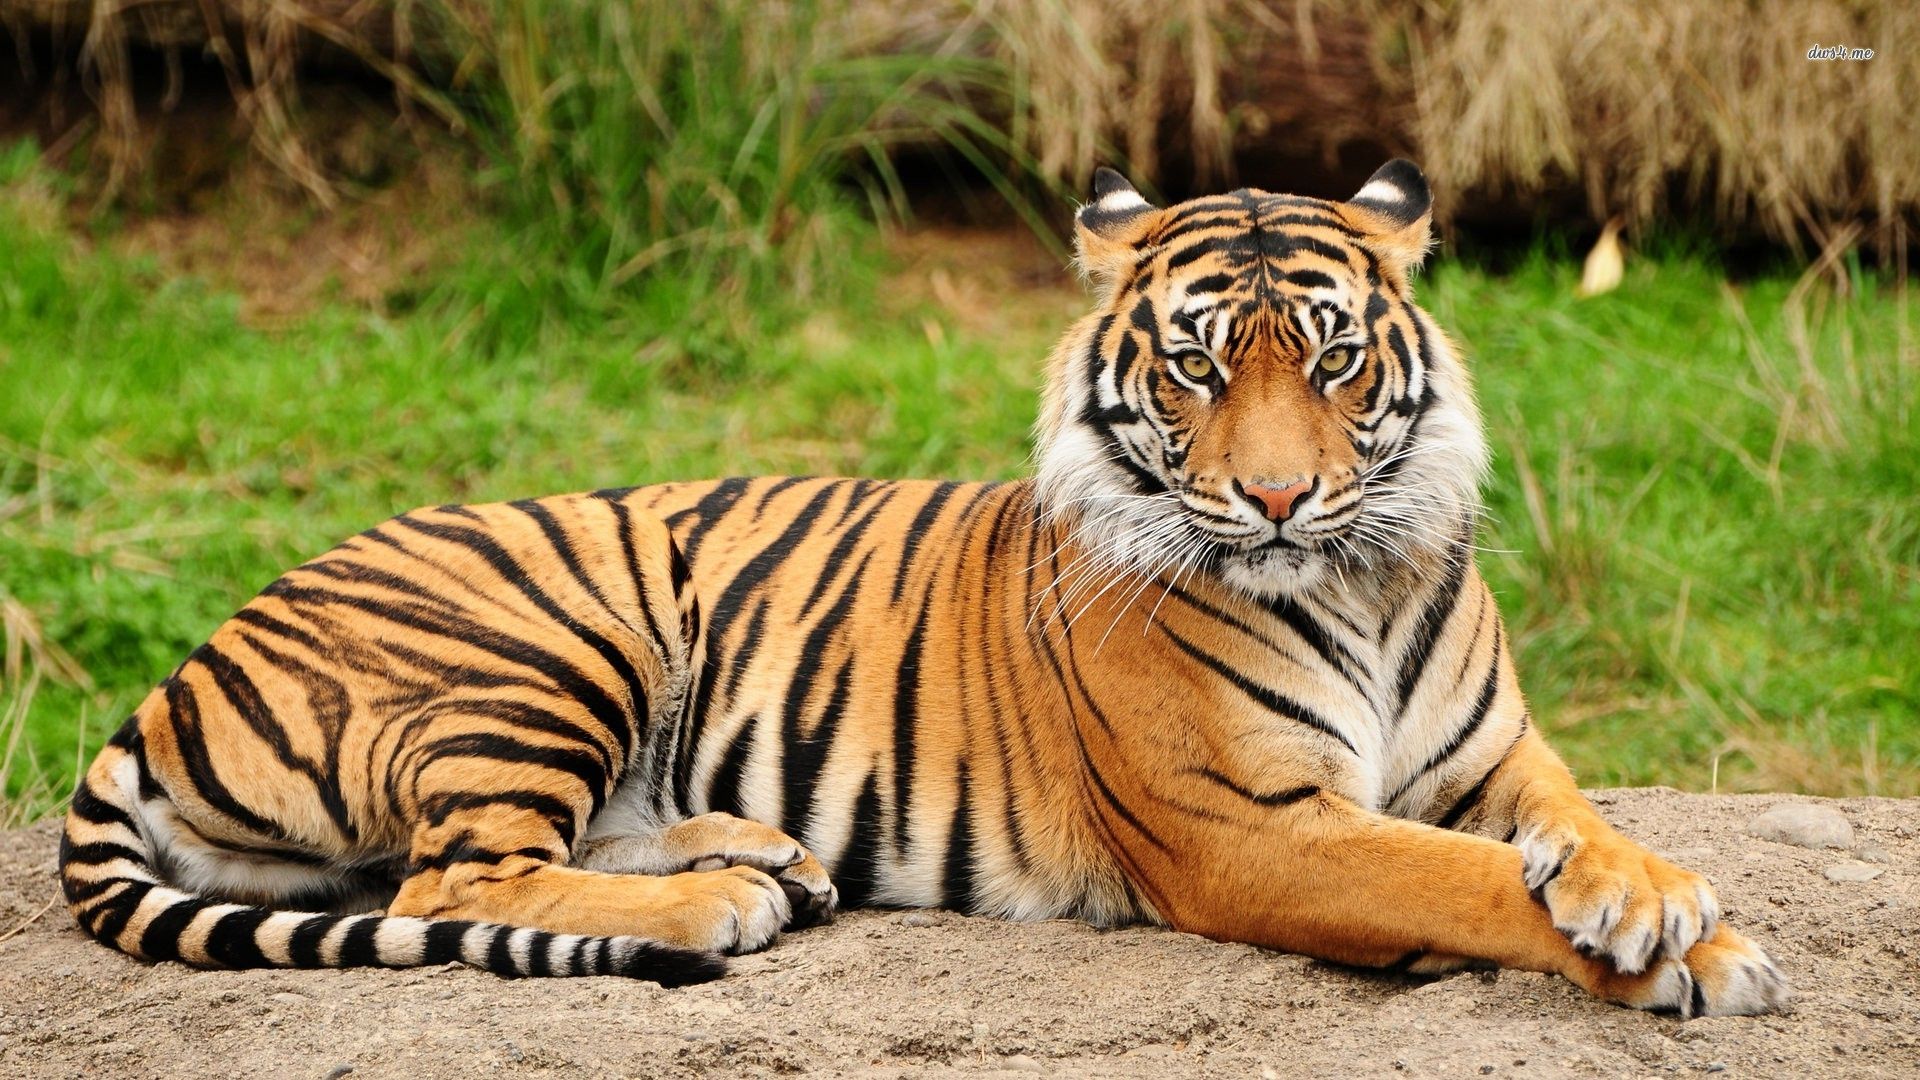 tiger hd wallpaper,tiger,terrestrial animal,wildlife,mammal,vertebrate